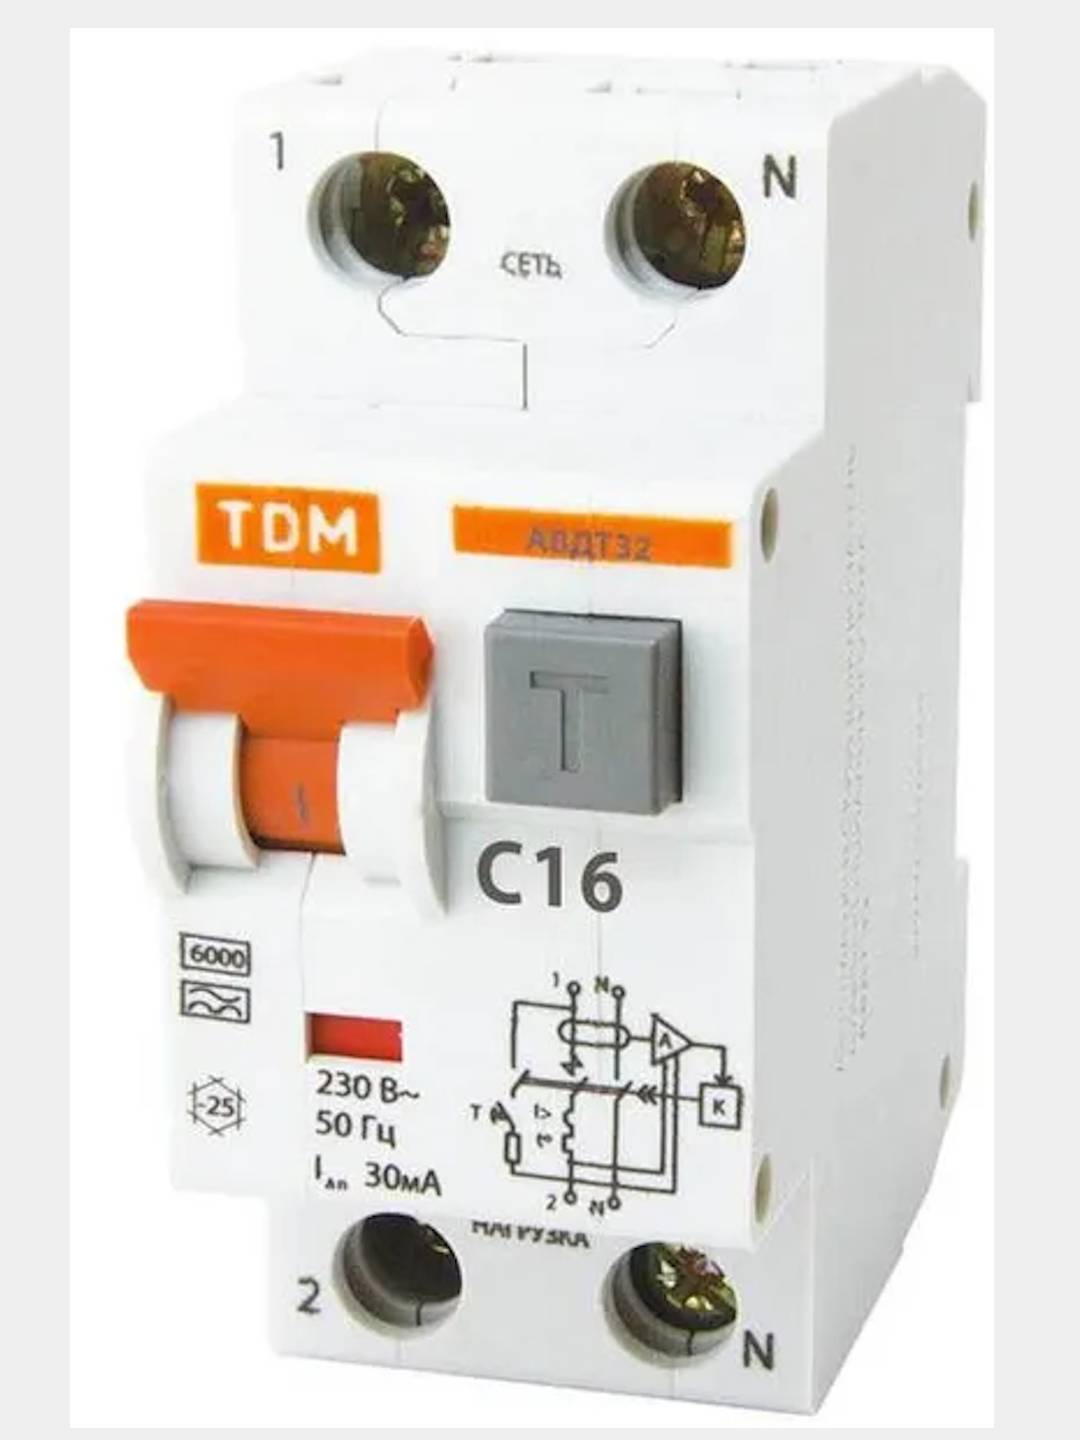 Автоматический выключатель дифференциального тока авдт32. Диф. Автомат TDM sq0202-0004. АВДТ 32 c16 ТДМ ВДТ. Диф. Автомат TDM sq0202-0013. Диф. Автомат TDM sq0202-0030.